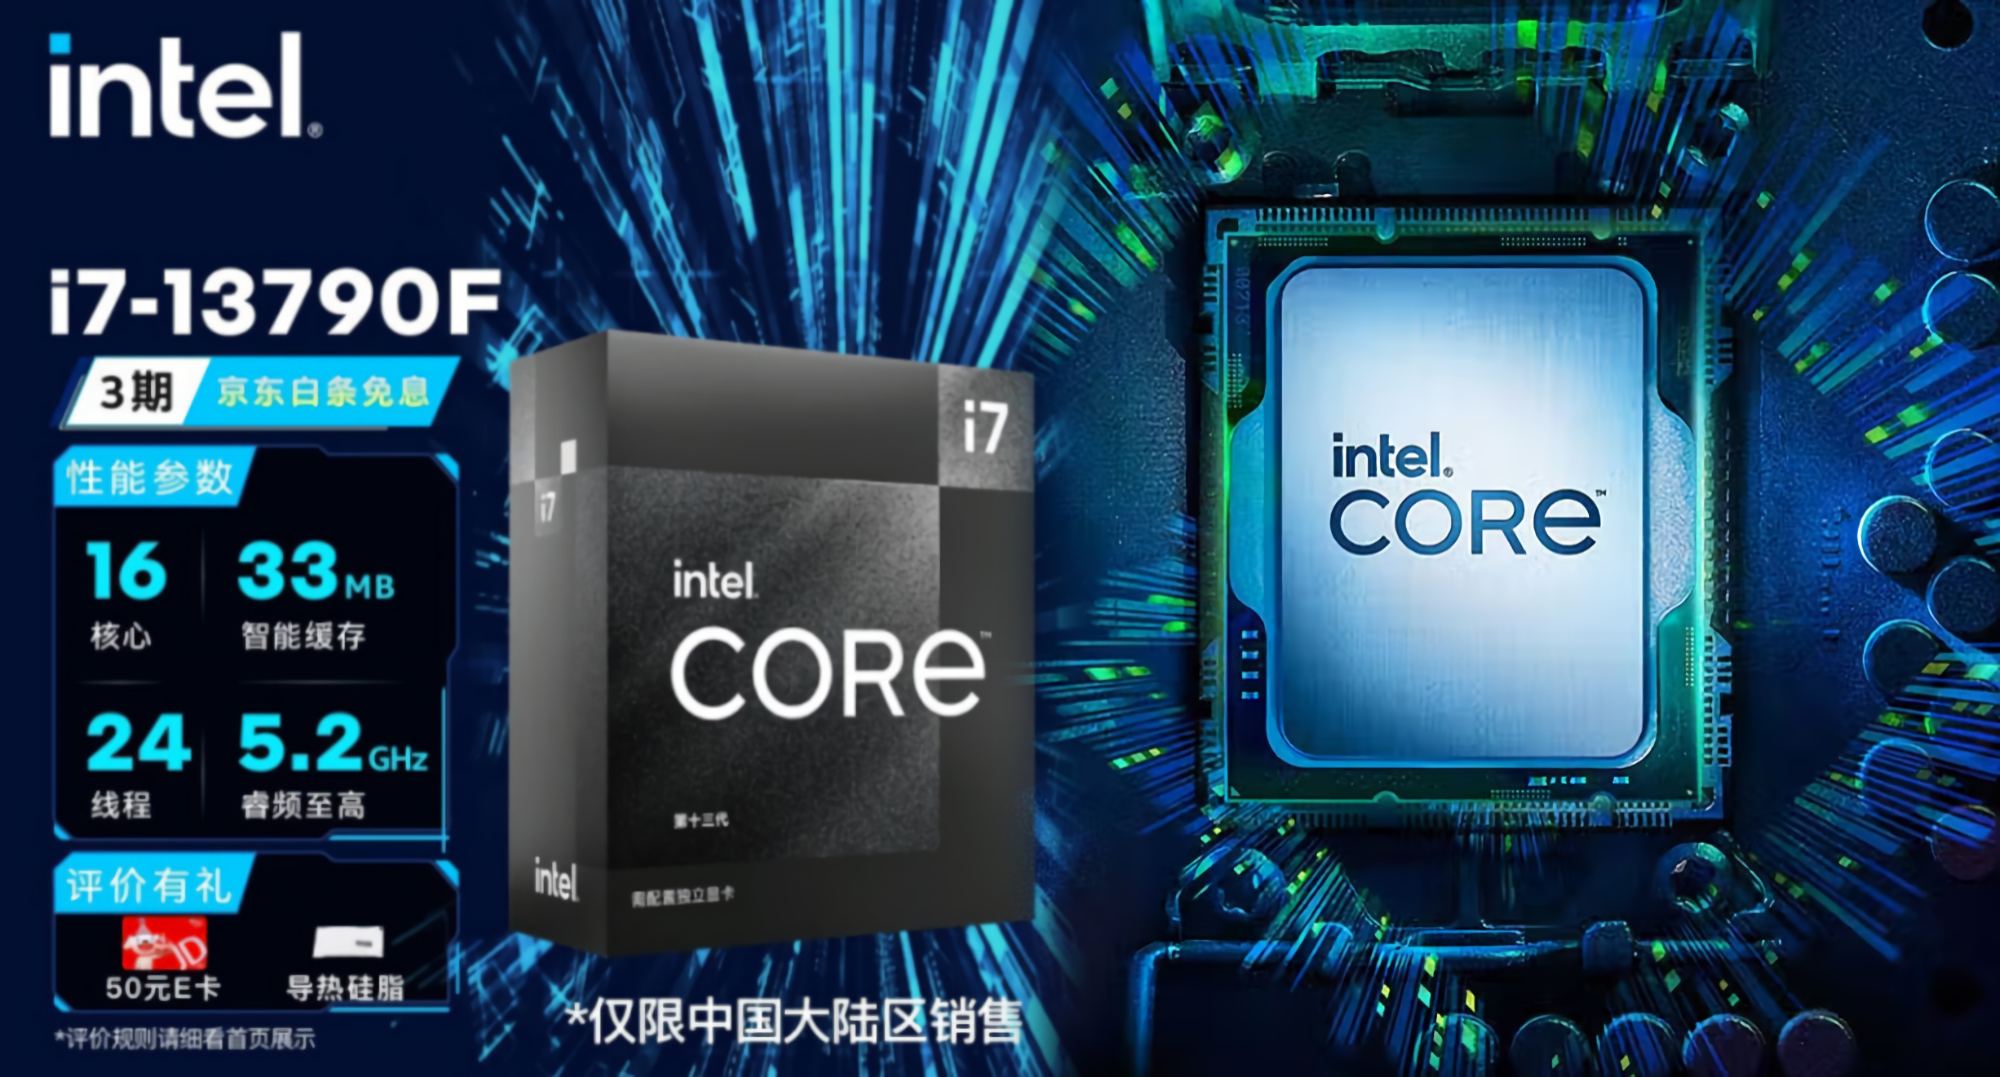 intel 13790f hero หลุดซีพียู Intel Core i7 13790F วางจำหน่ายในราคา 14,824บาท ในฝั่งประเทศจีน